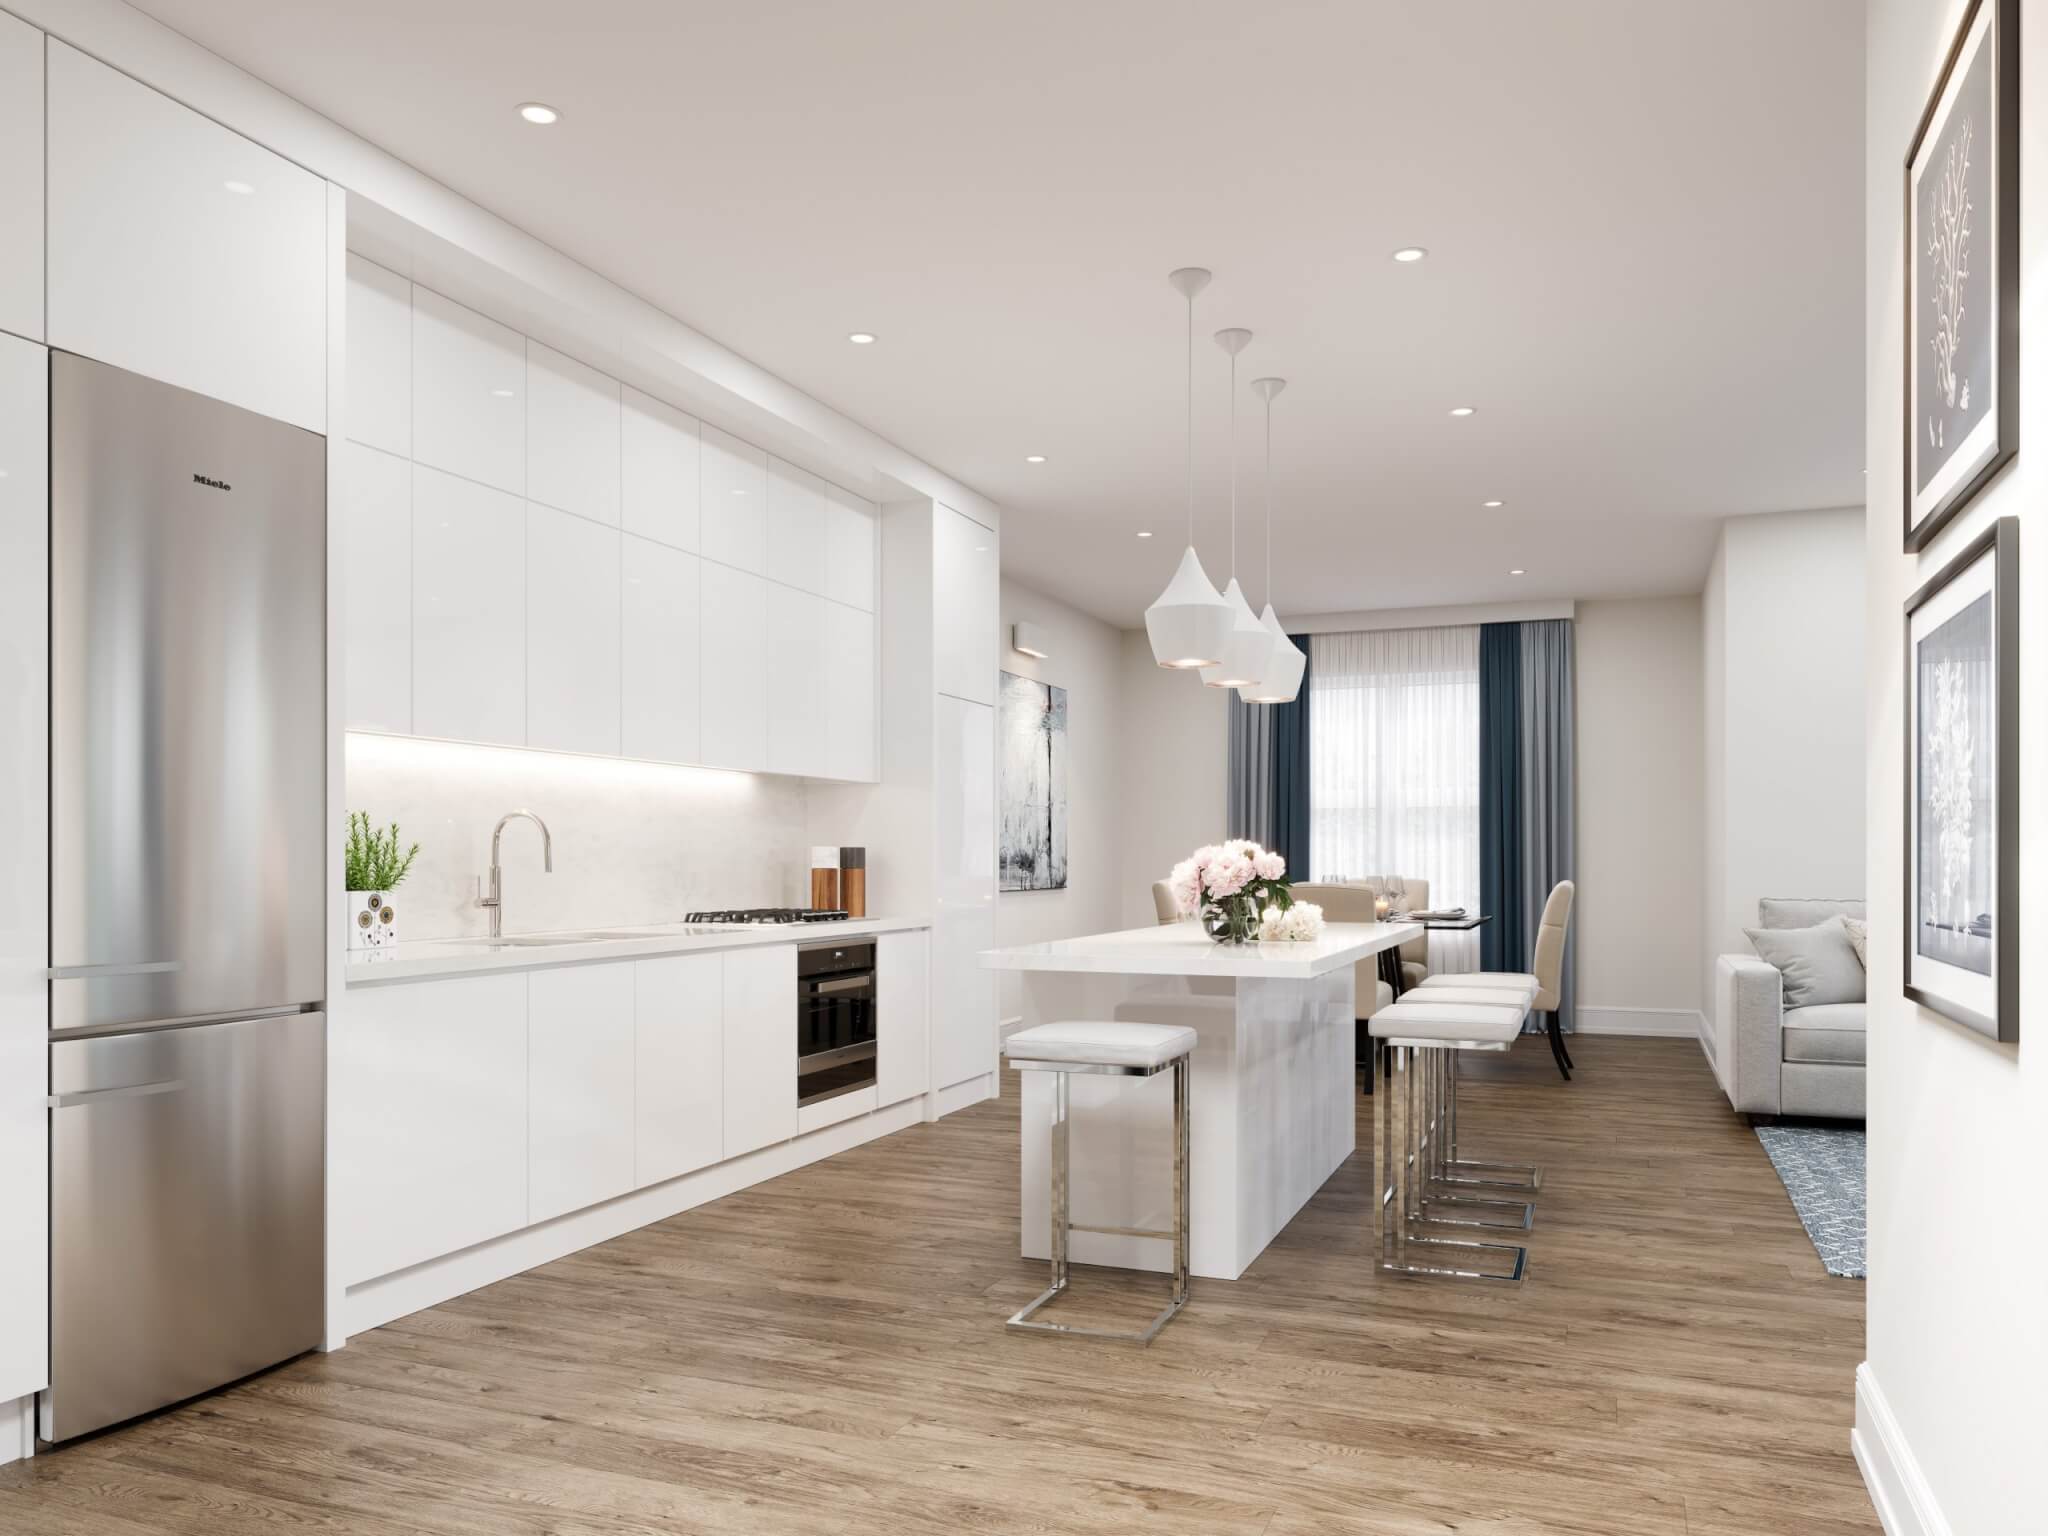 Open concept kitchen, modern and minimalist design.